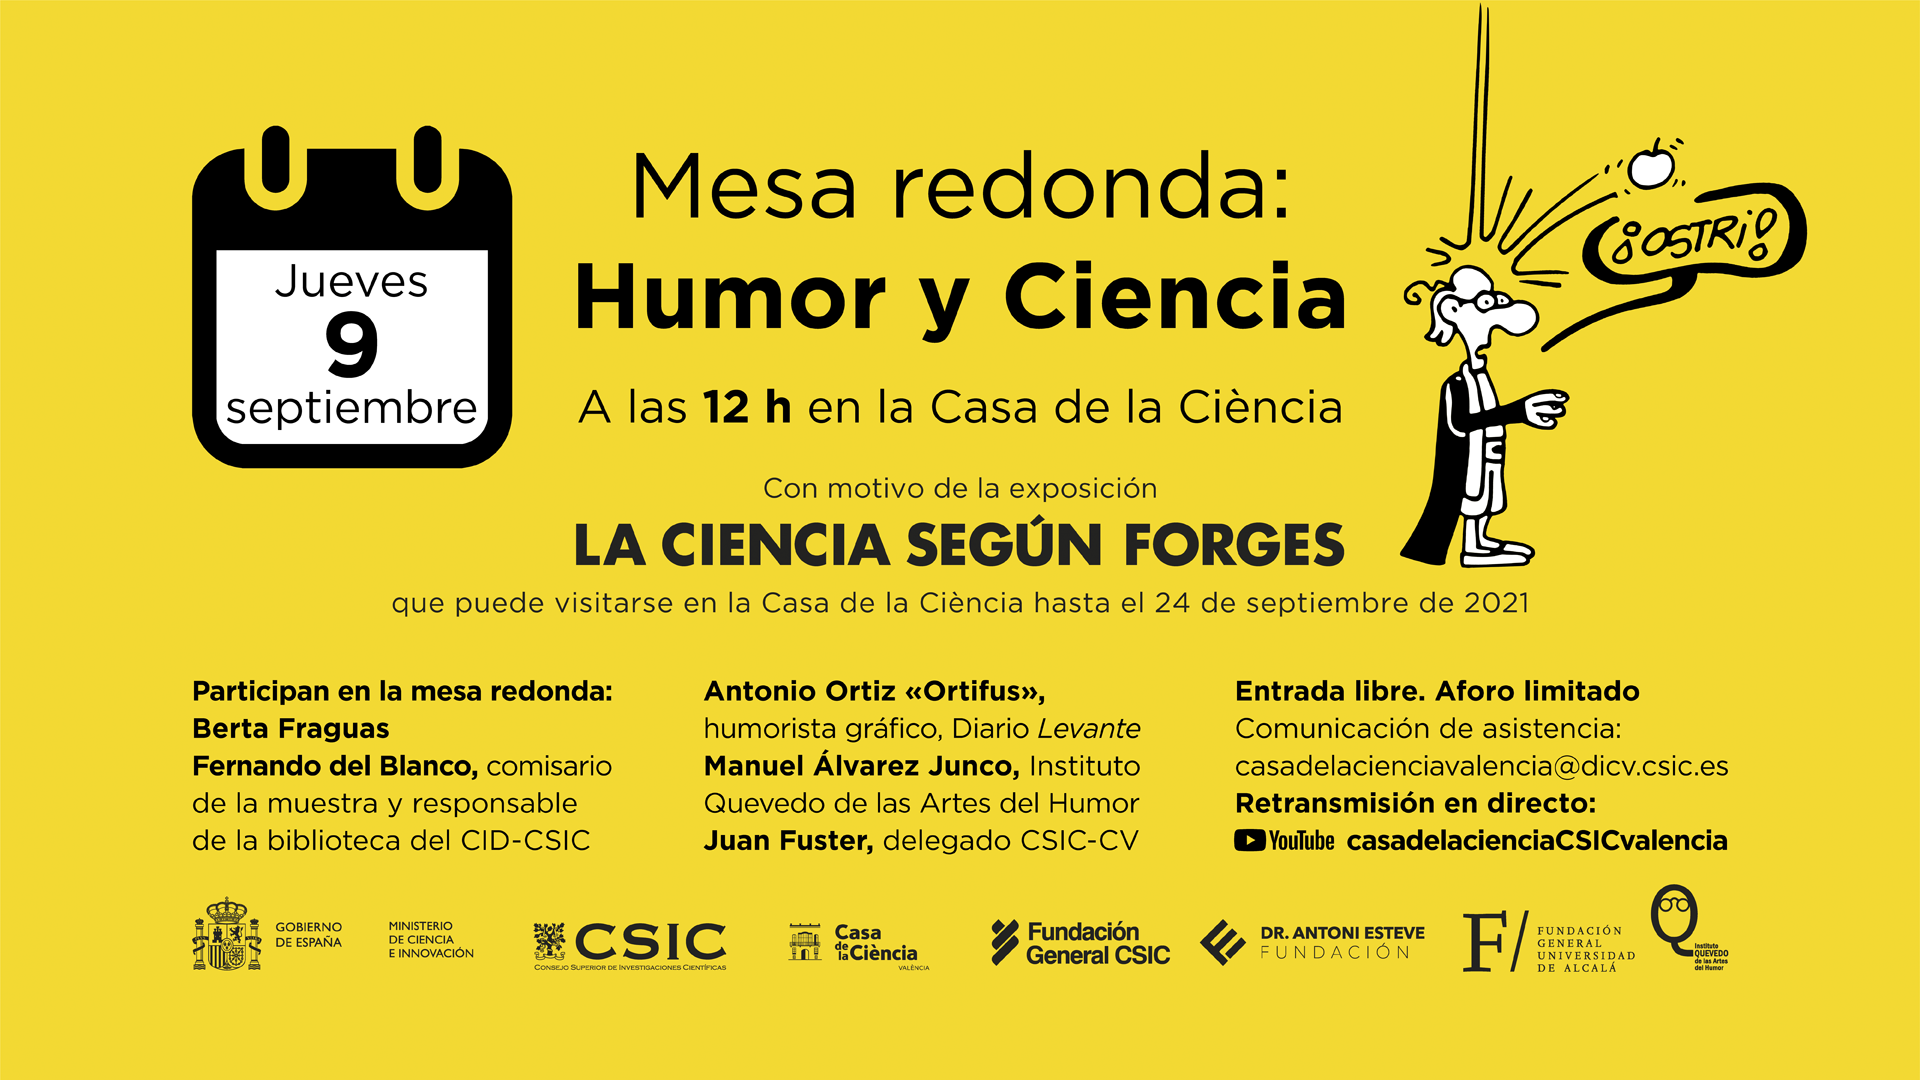 Mesa redonda "Humor y ciencia"